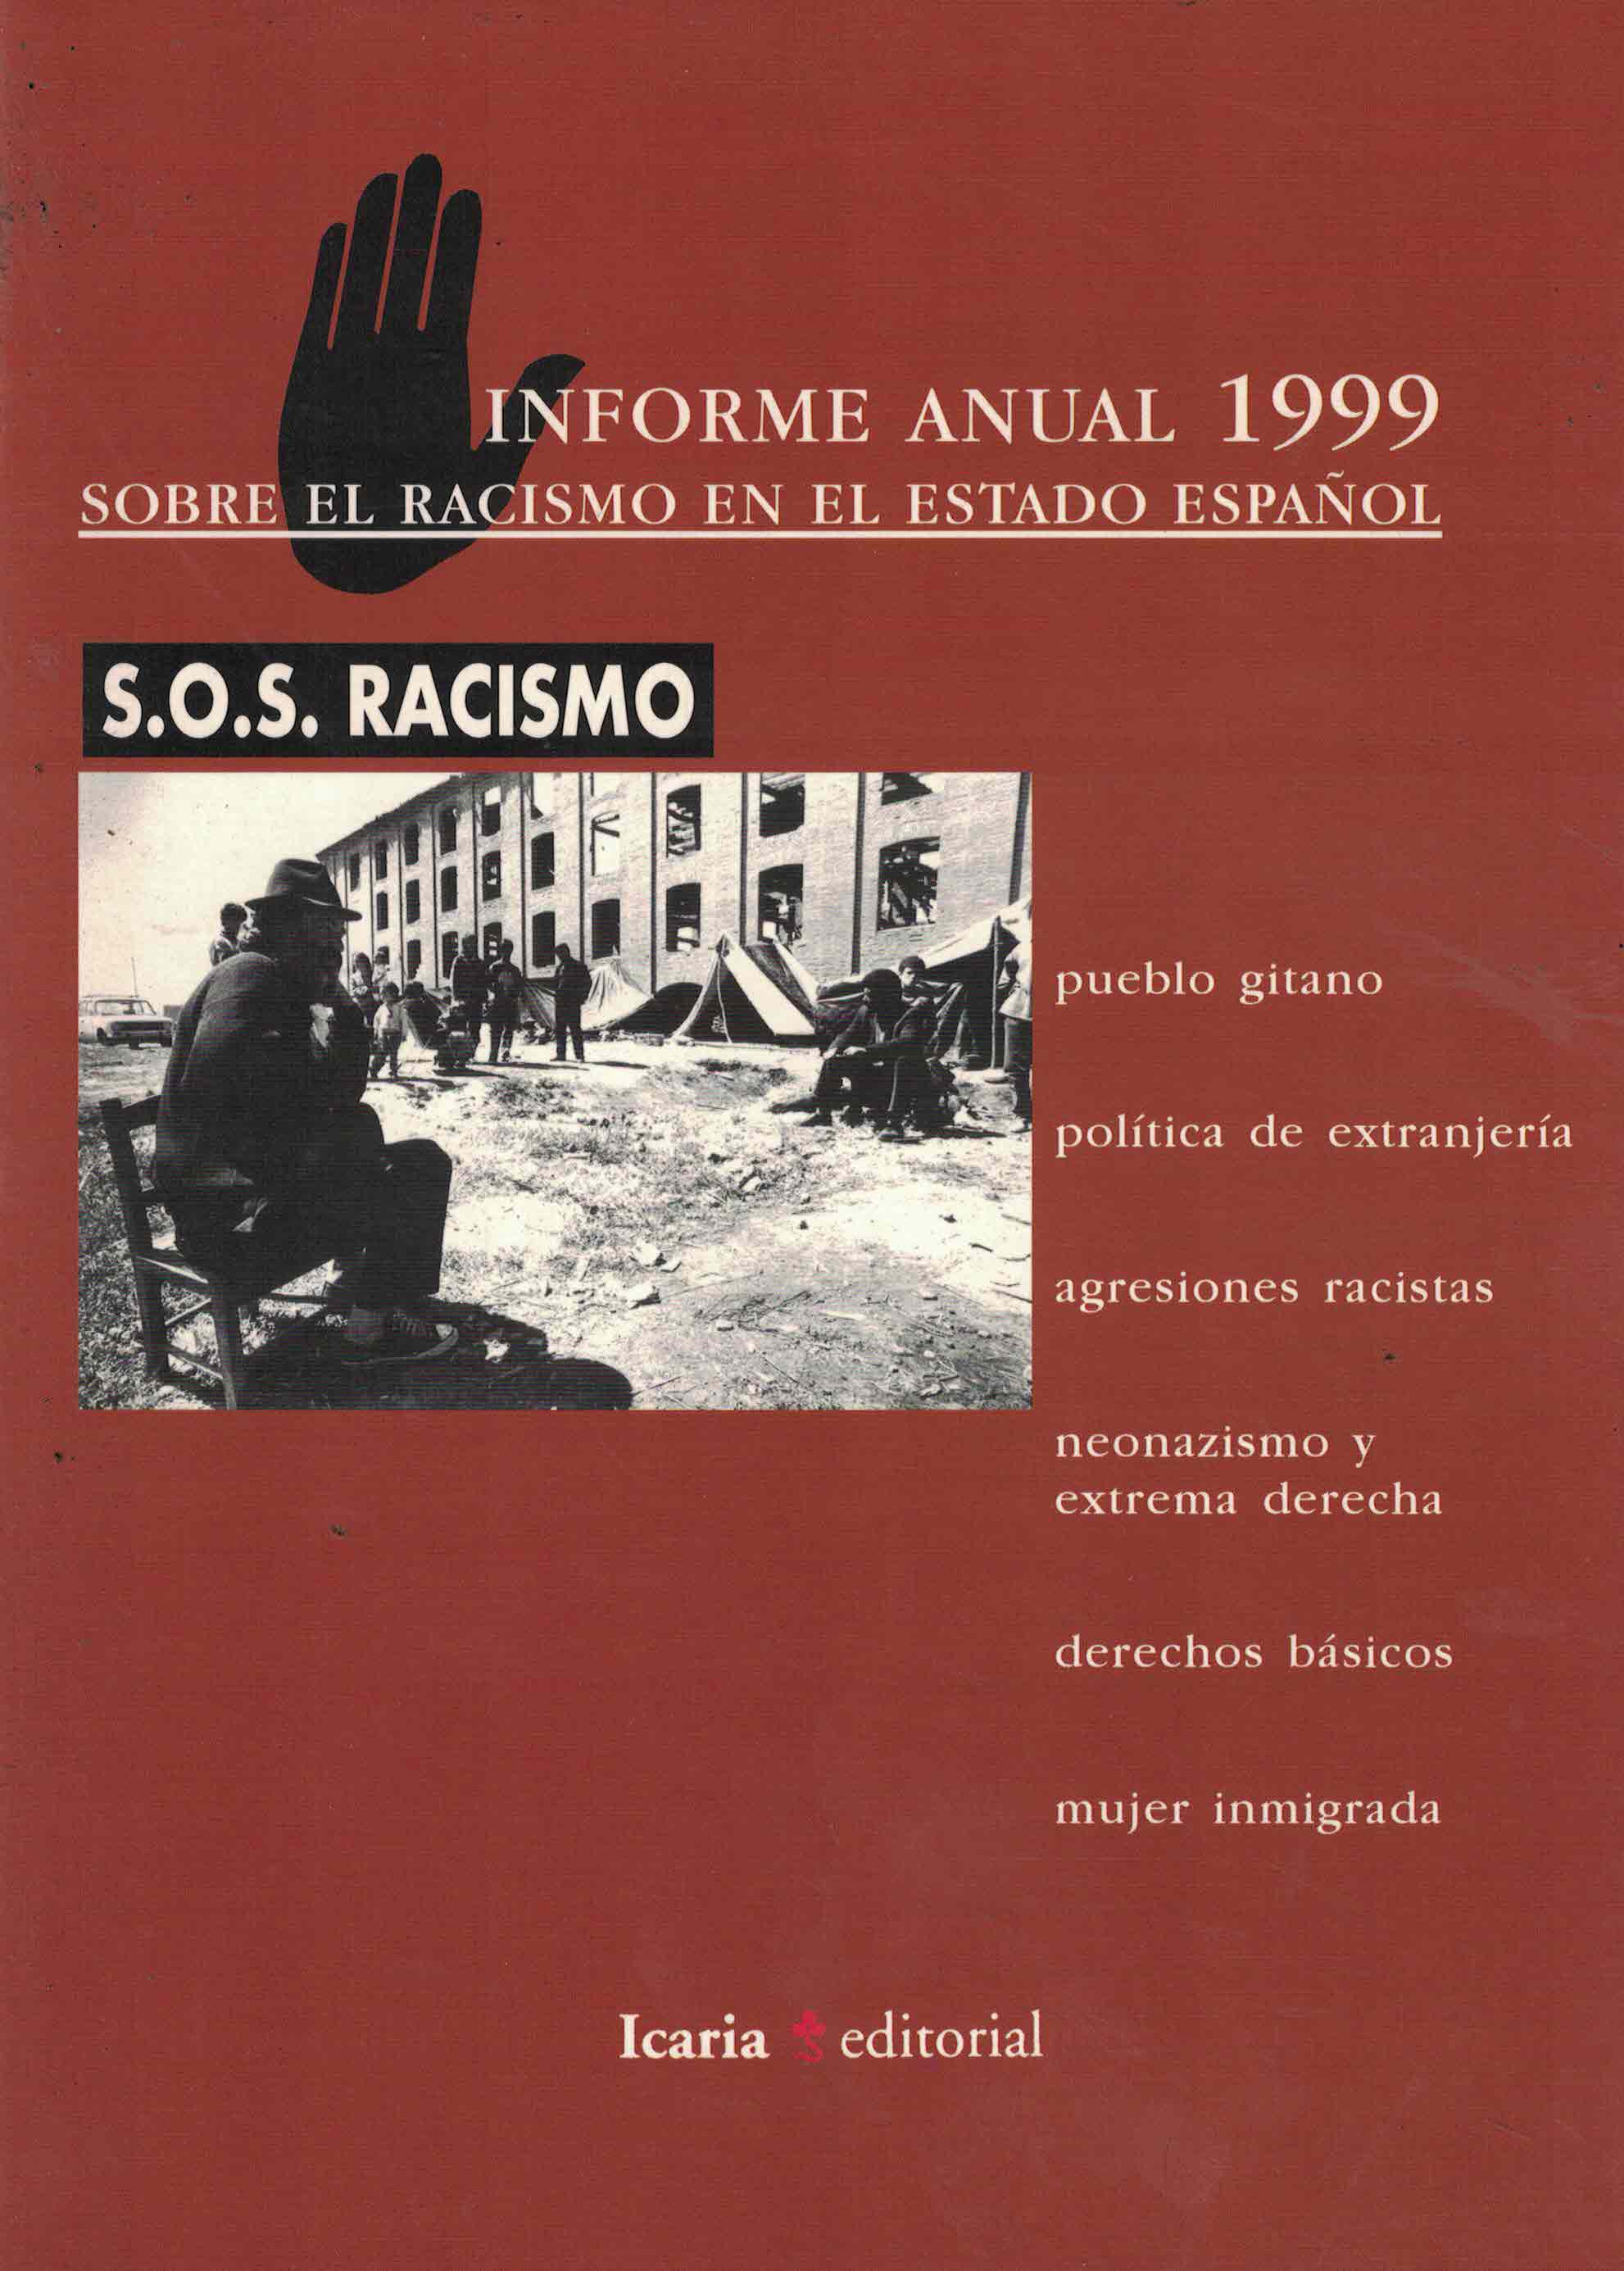 Informe anual 1999 sobre el racismo en el Estado español